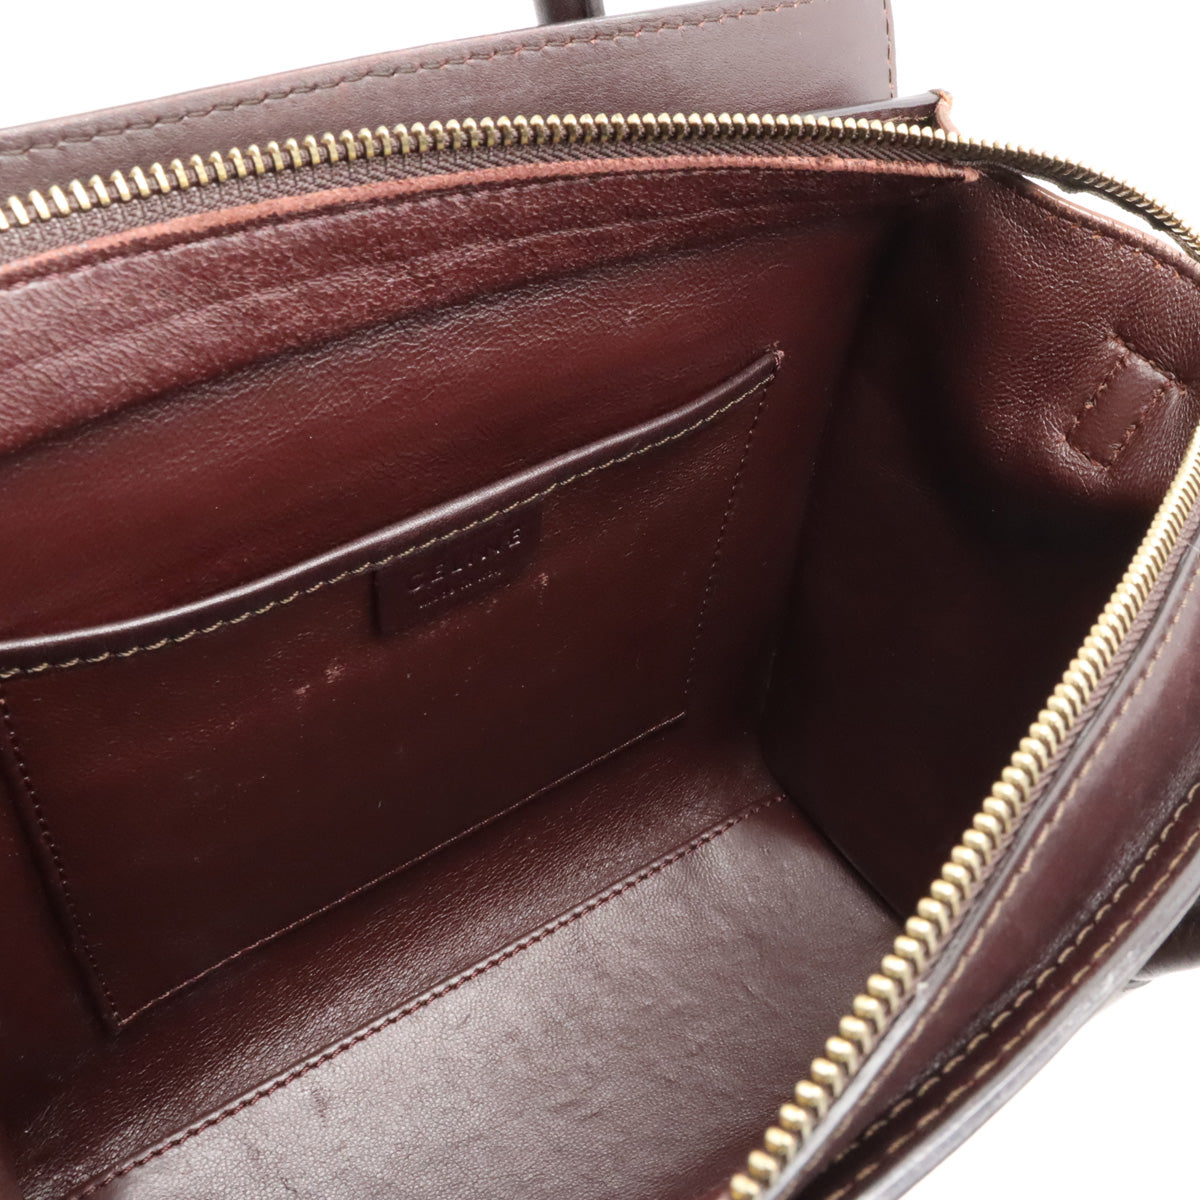 Celine Lagoon Nano per Handbag 2WAY Shoulder Bag Leather Sword Tricolor Beige Brown 168243